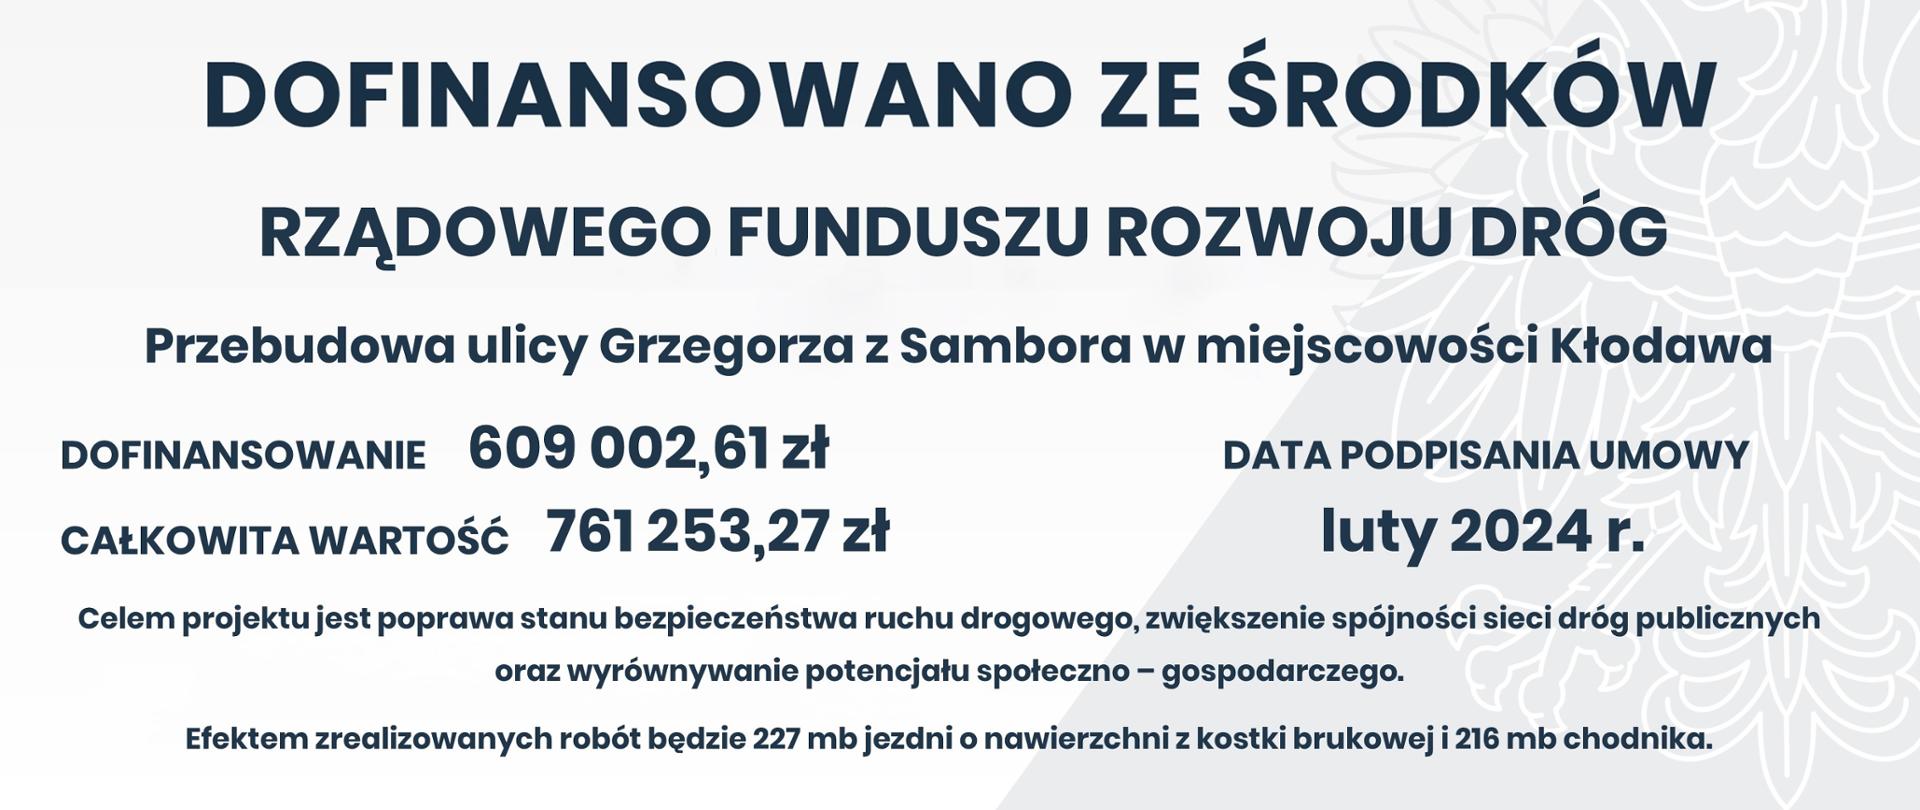 Przebudowy ulicy Grzegorza z Sambora w miejscowości Kłodawa